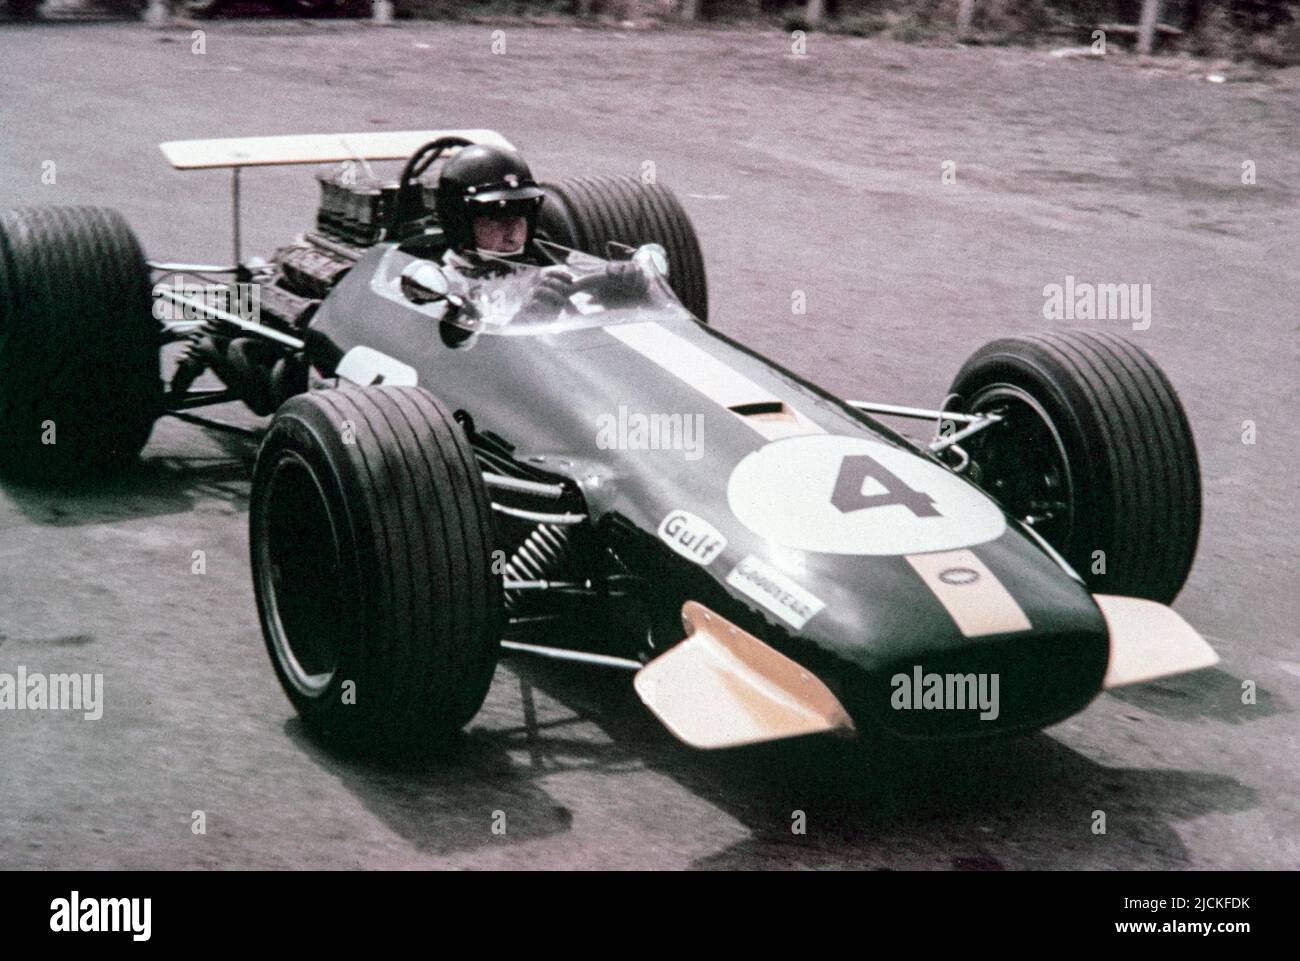 1968 britischer Formel-1-Grand-Prix bei Brands Hatch. Jochen Rindt im Brabham Racing Brabham BT-26 Repco, Startnummer 4. Stockfoto